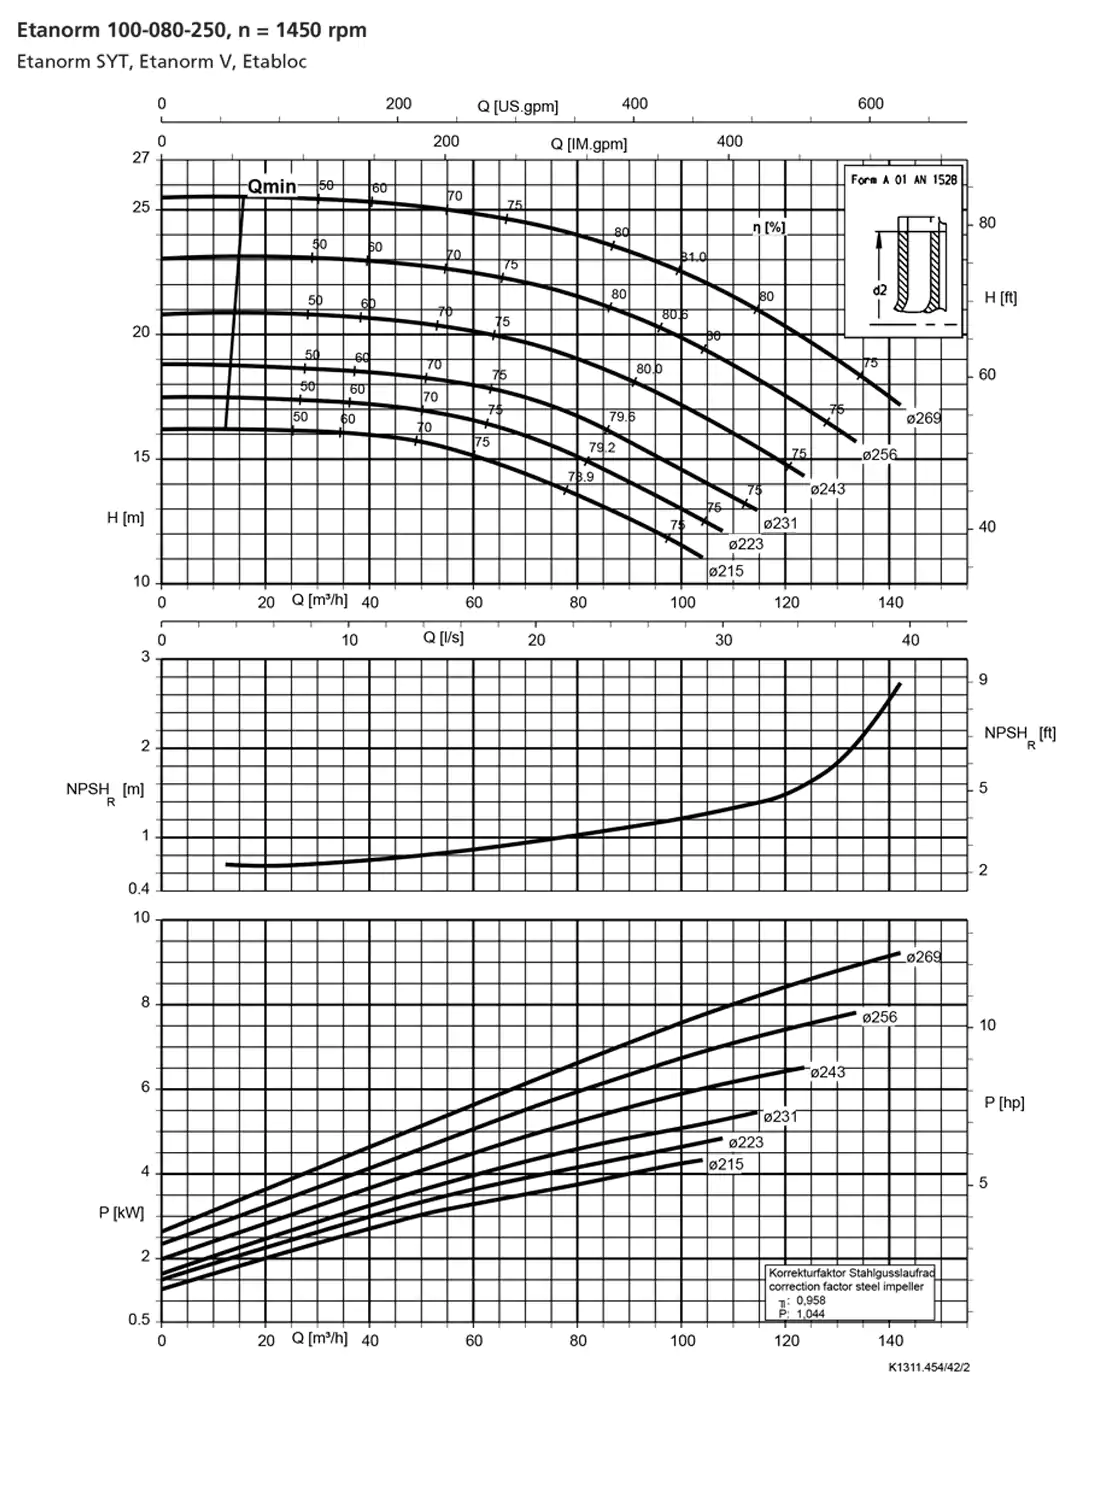 نمودار-کارکرد-پمپ-etanorm-syt-100-80-250-1450